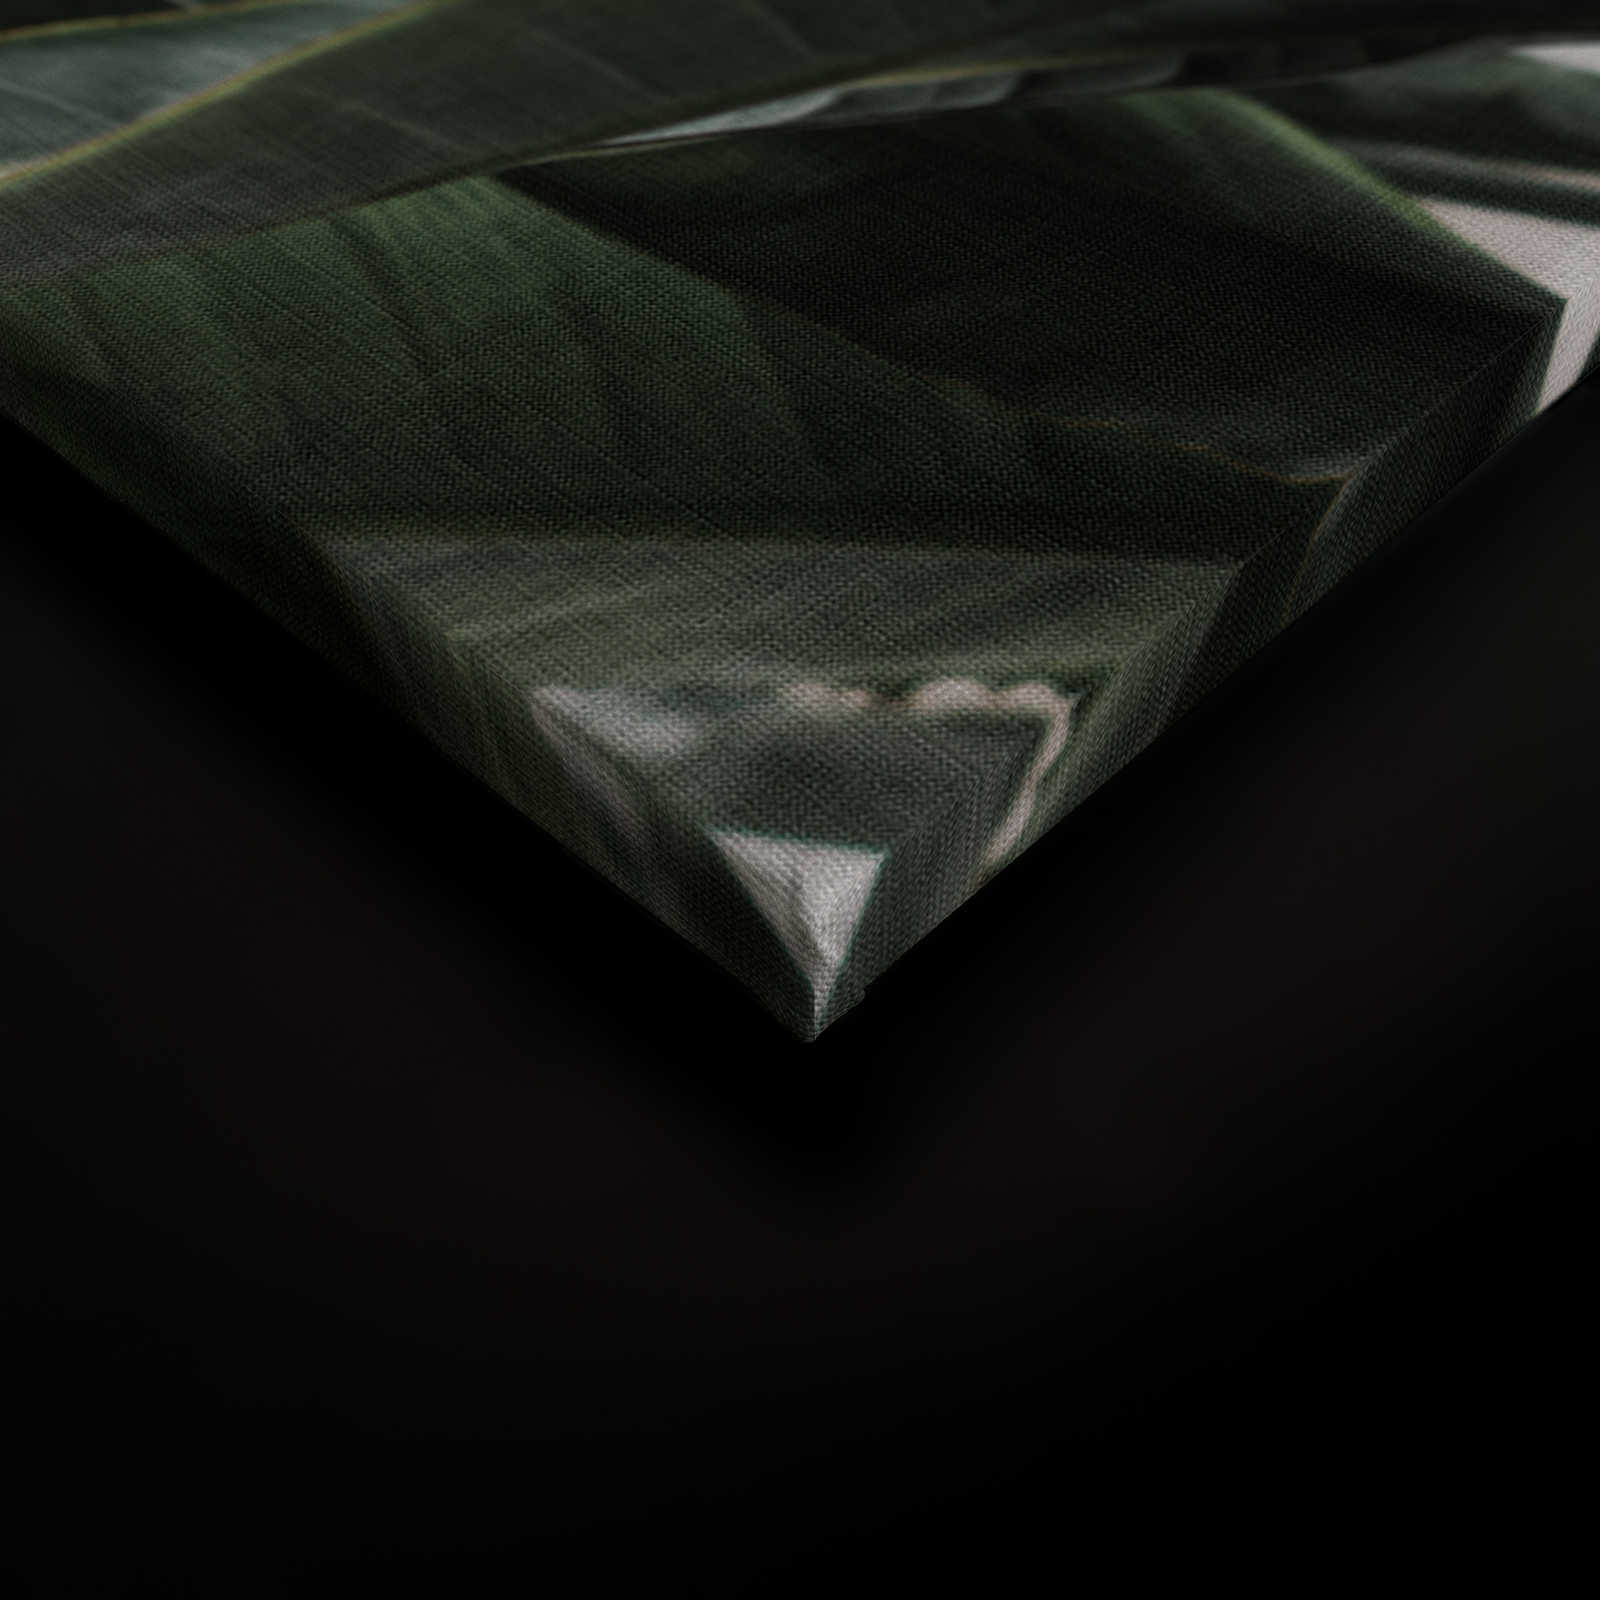             Giungla urbana 2 - Quadro su tela con foglie di palma, struttura in lino naturale piante esotiche - 0,90 m x 0,60 m
        